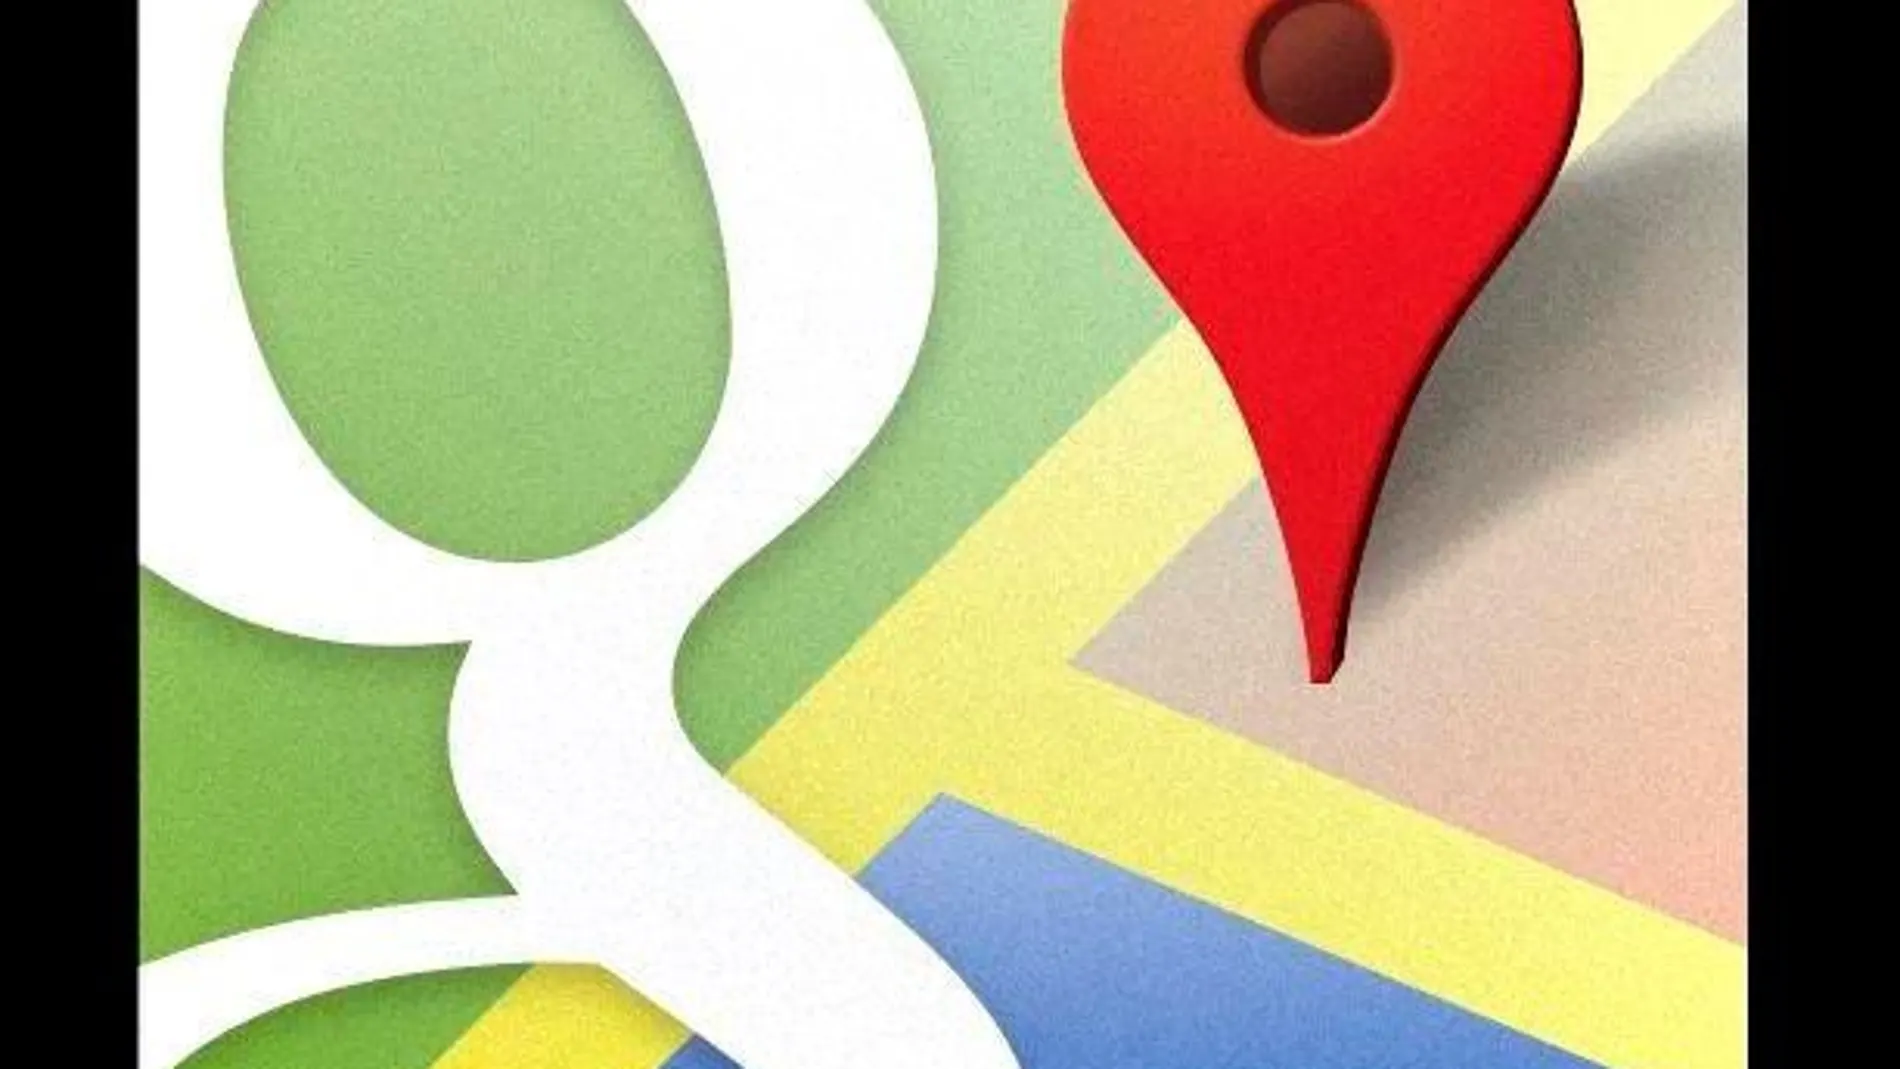 Google Maps introduce la predicción de afluencia en el transporte público